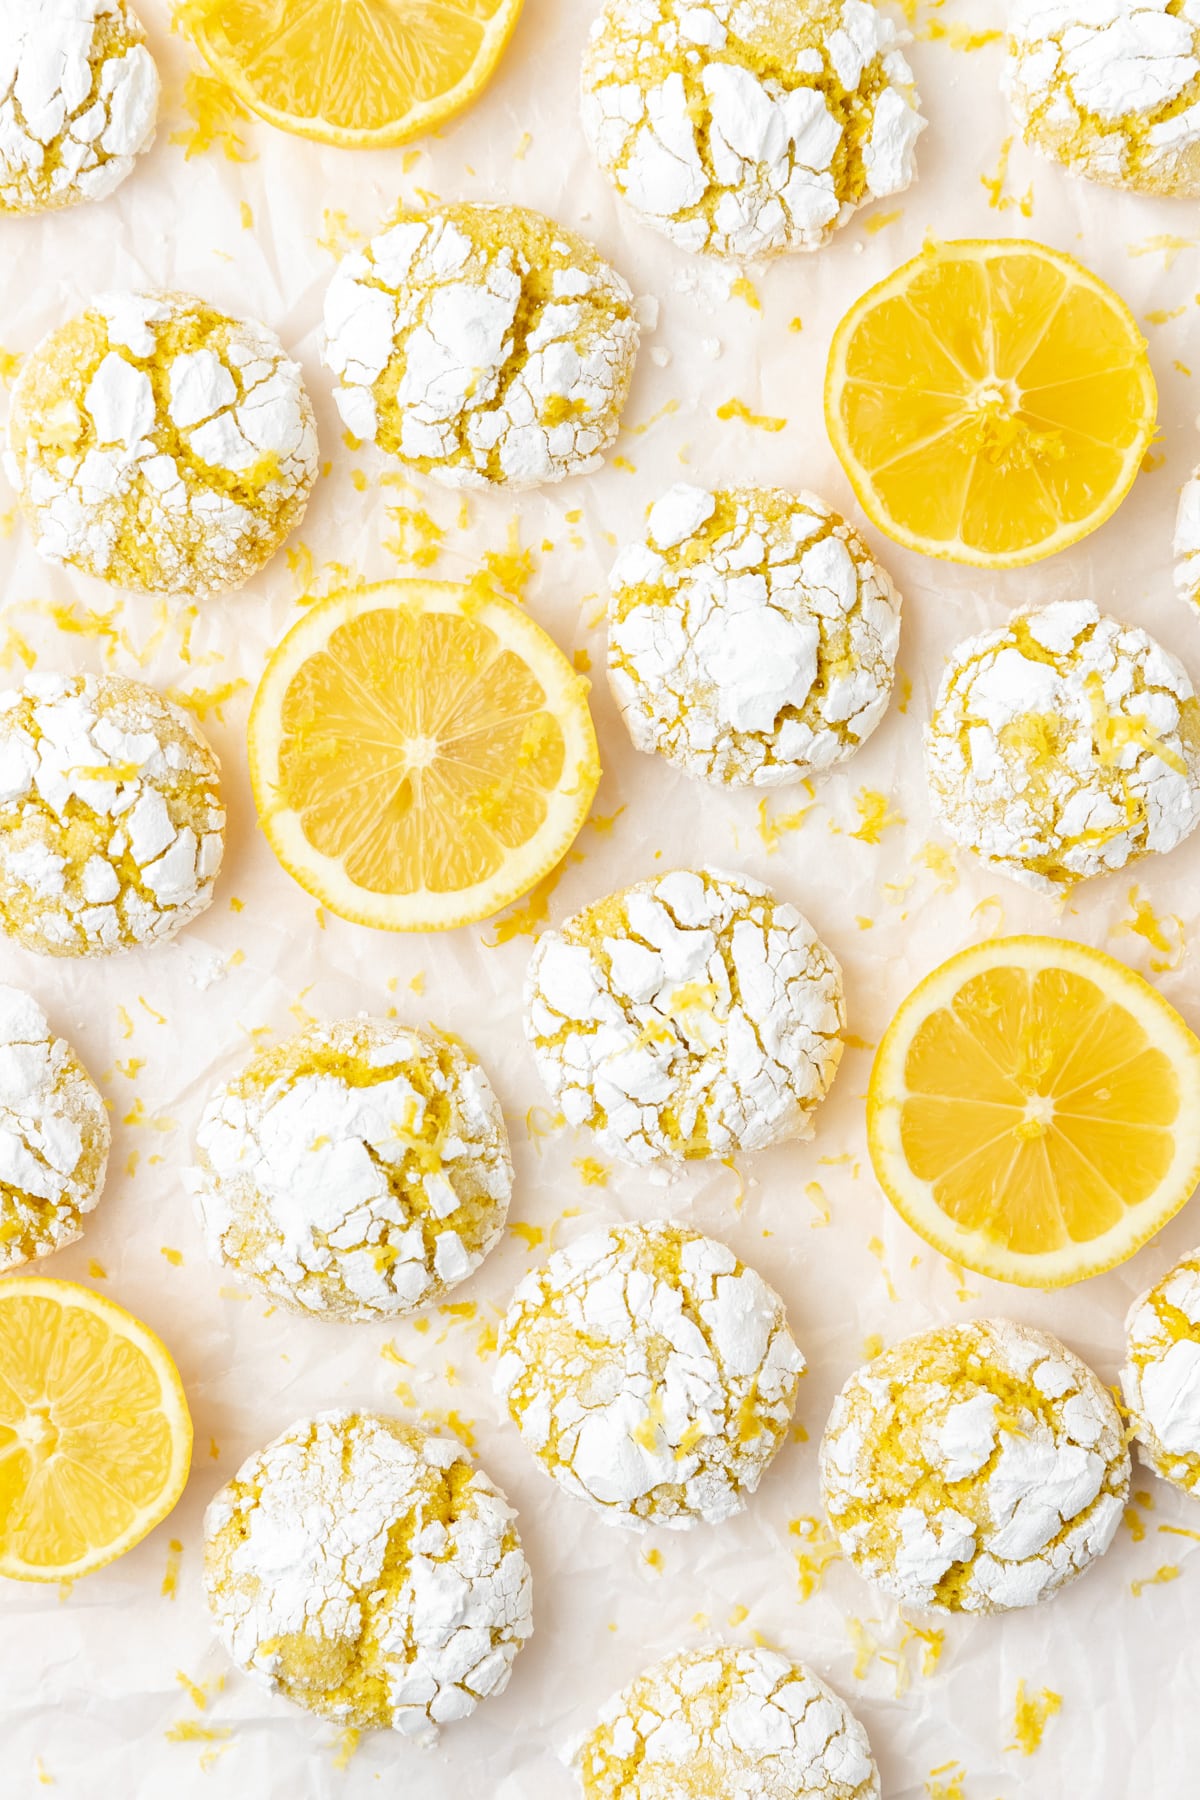 lemon crinkle cookies rolled in powdered sugar.